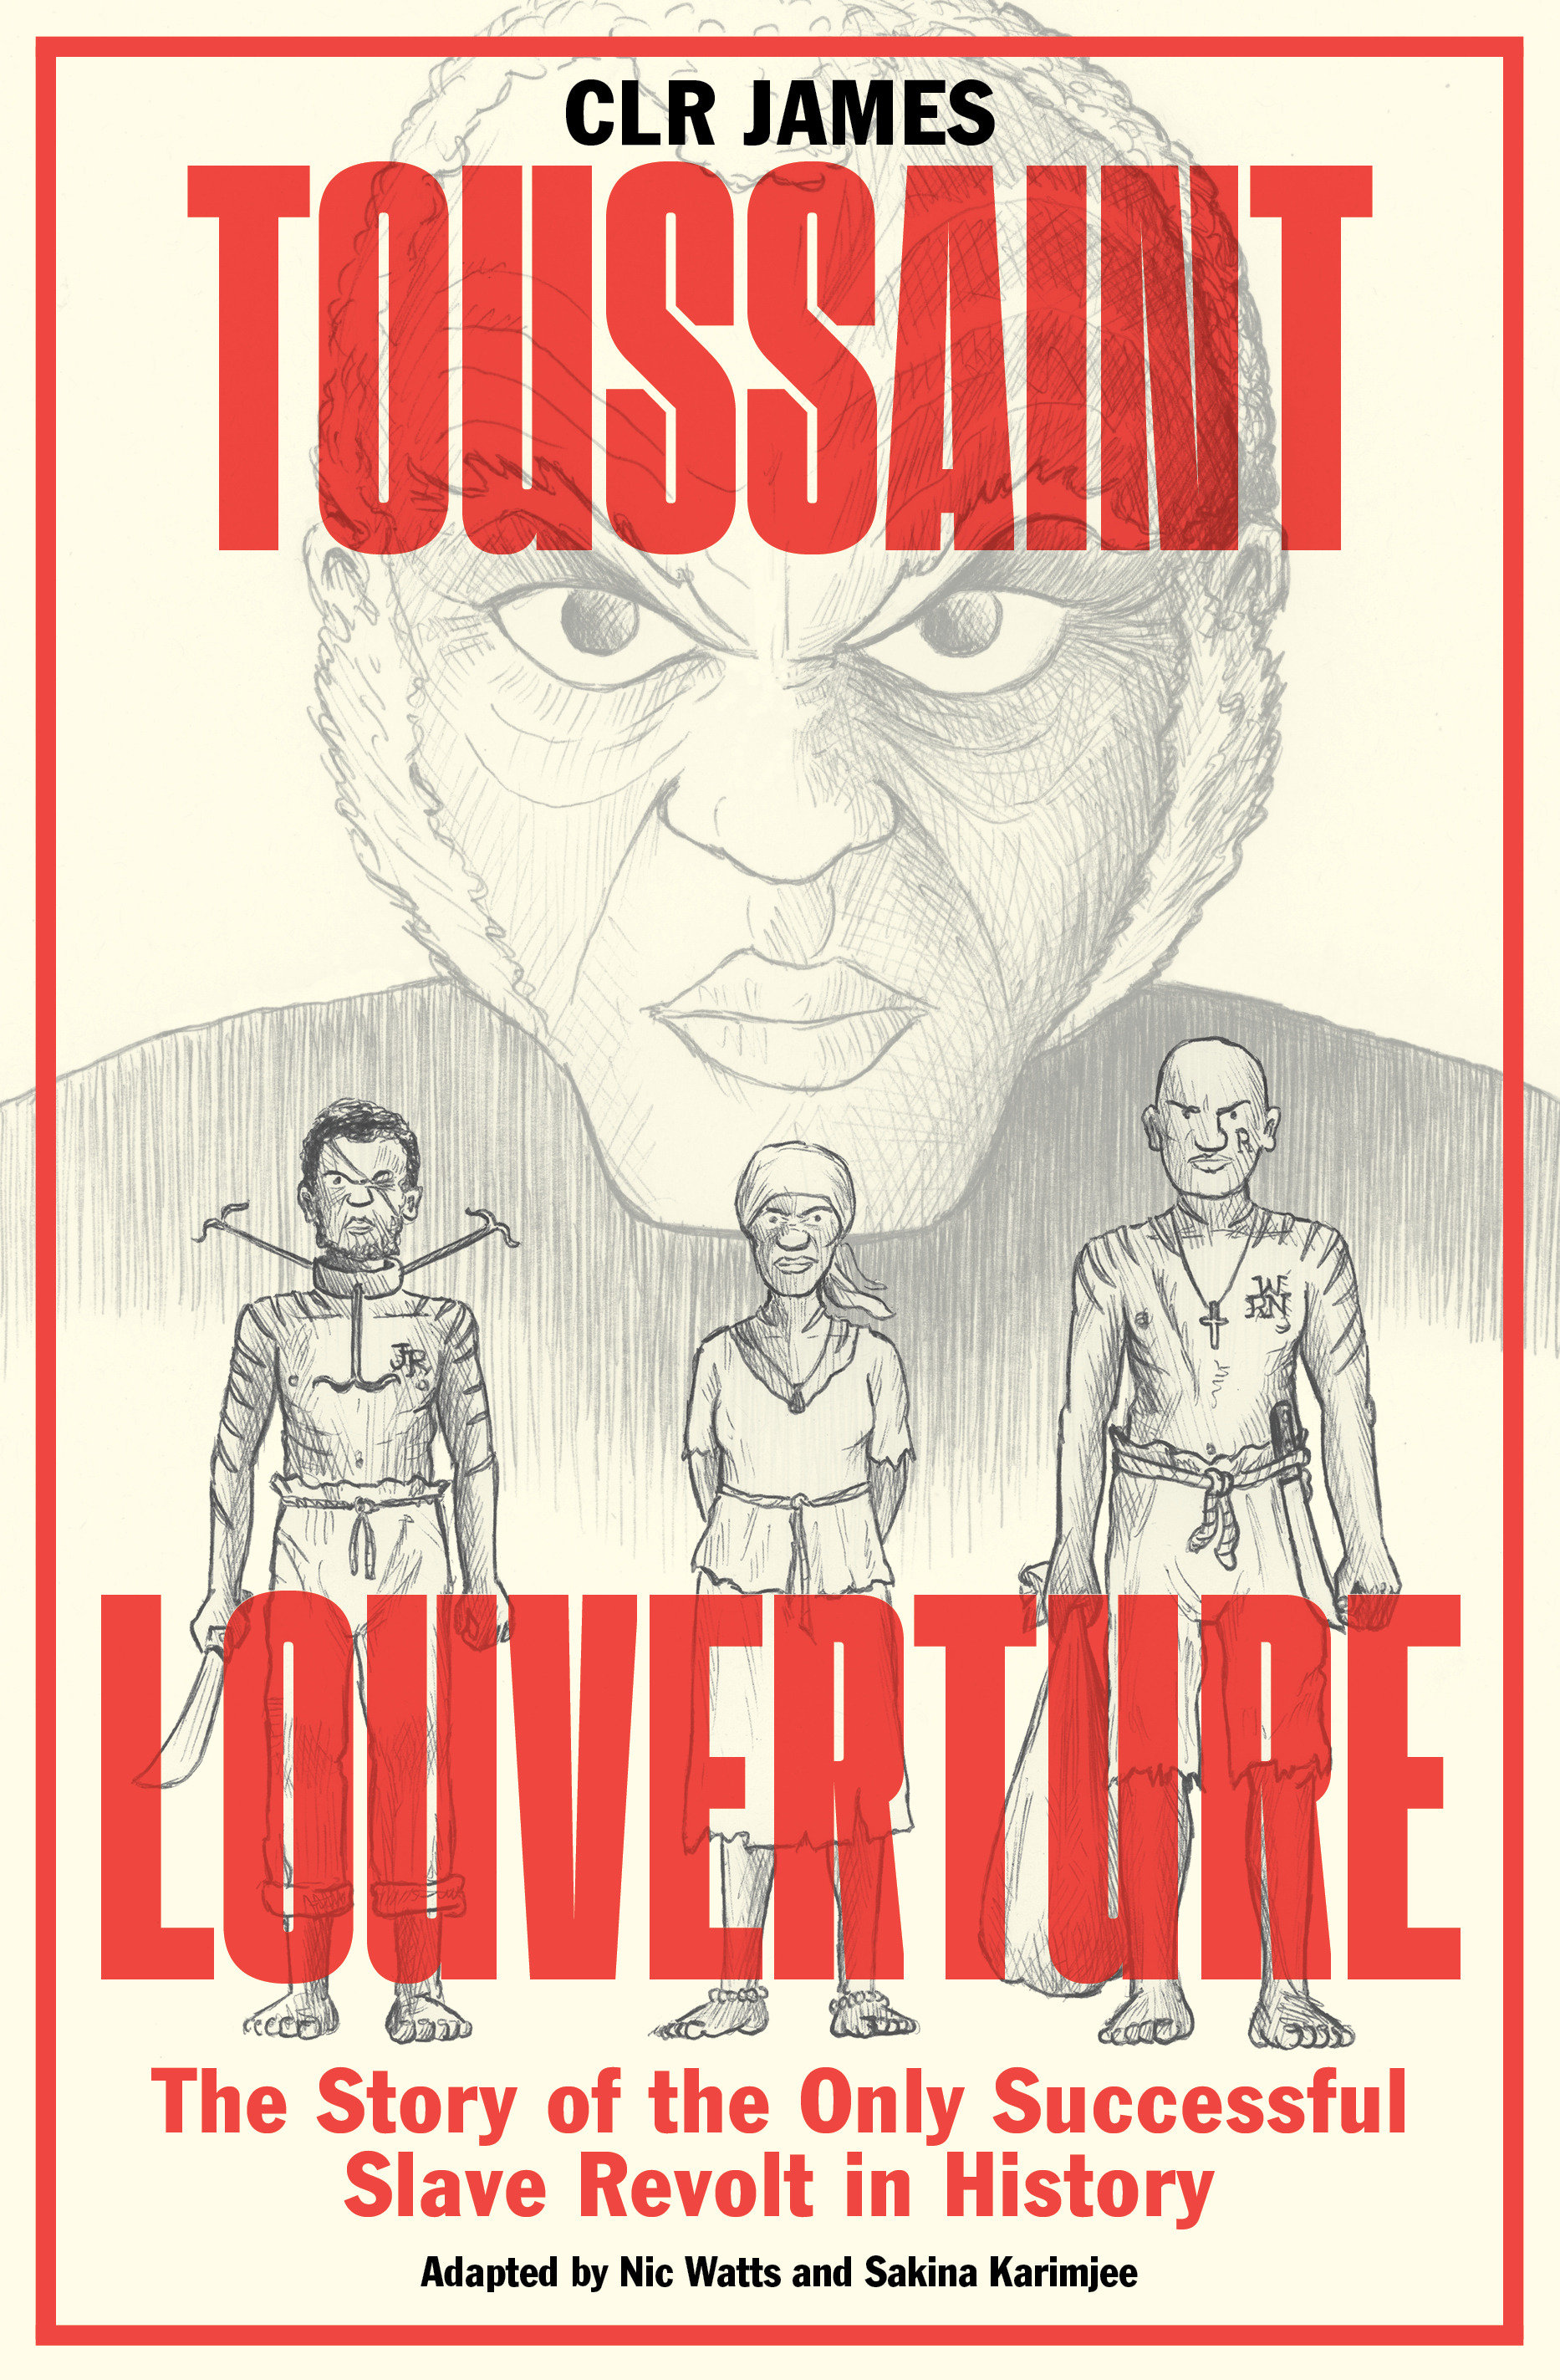 Toussaint Louverture Graphic Novel